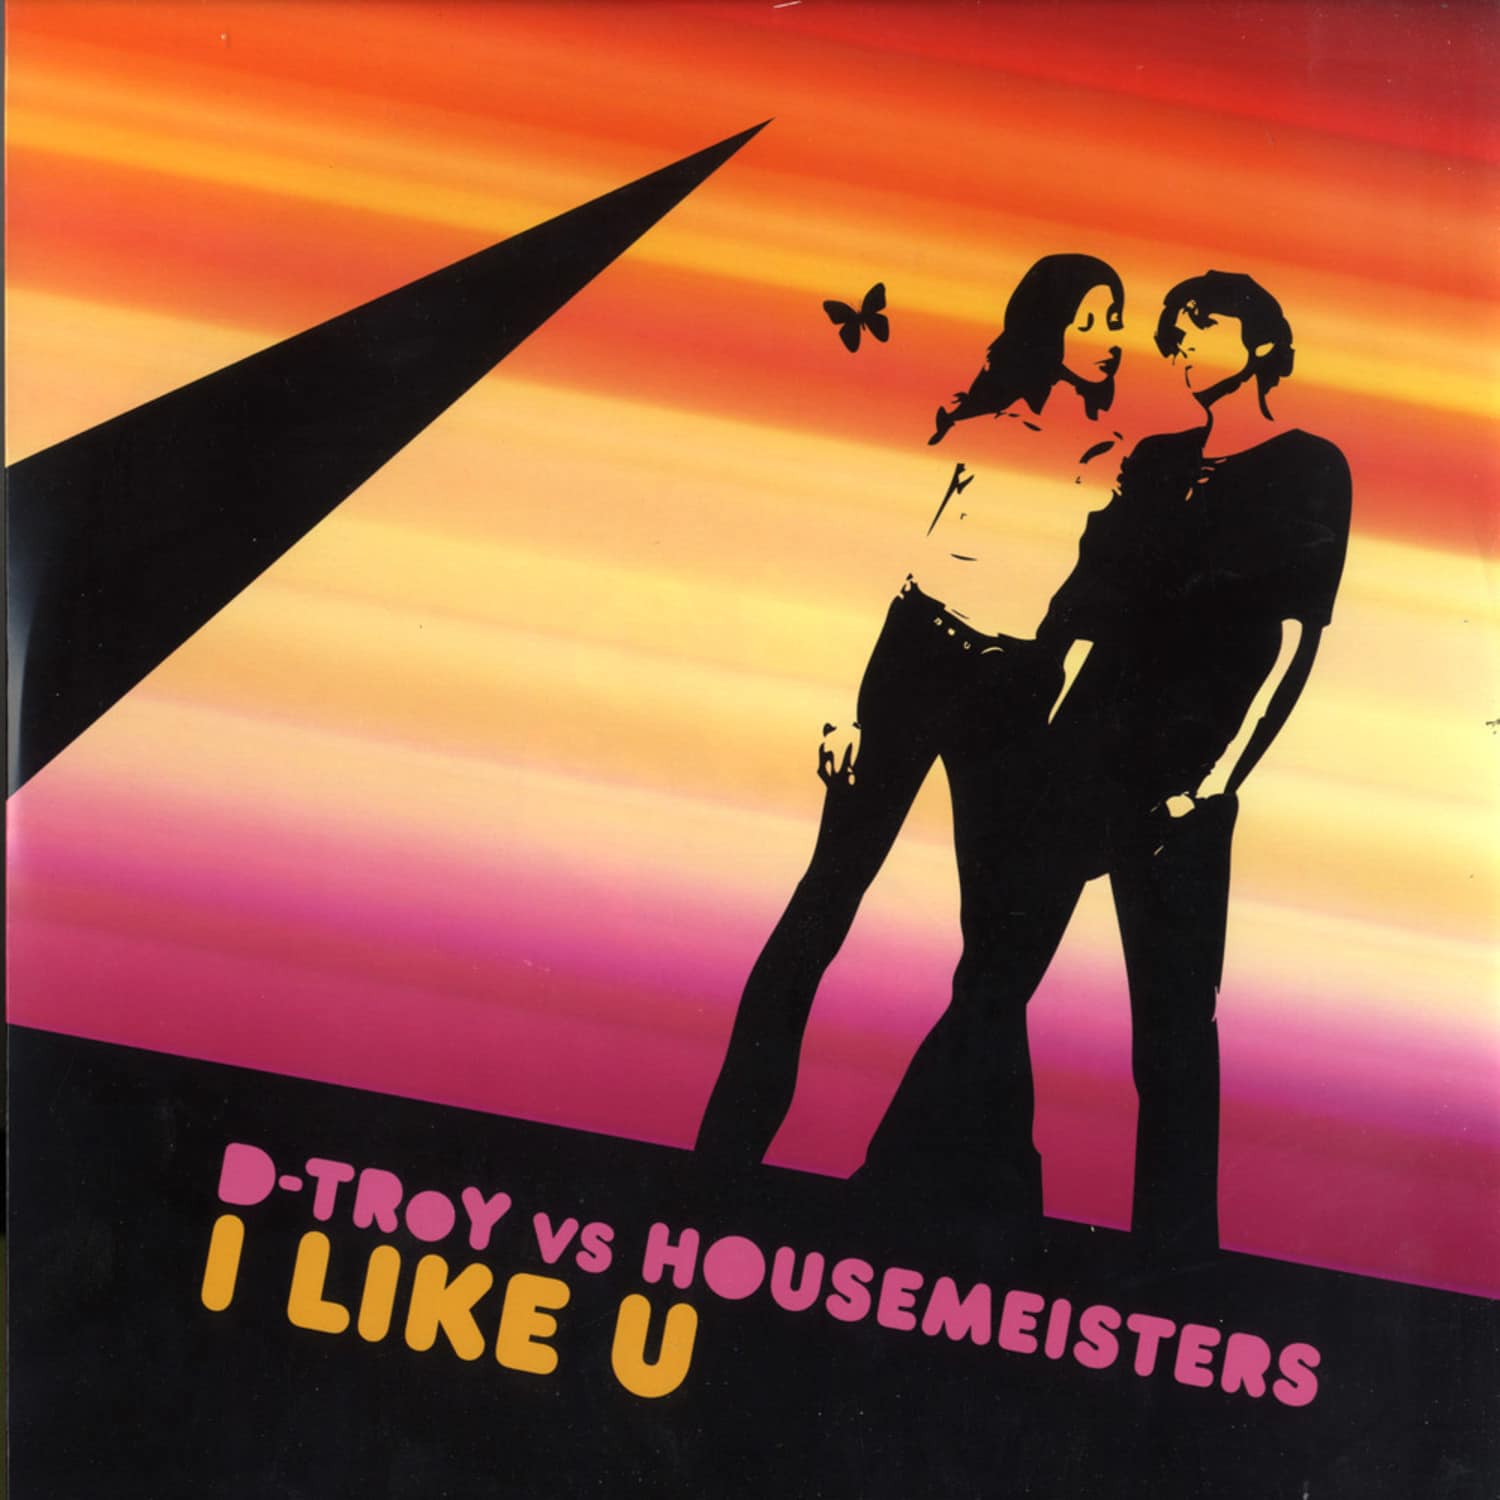 D-Troy vs Housemeister - I LIKE U